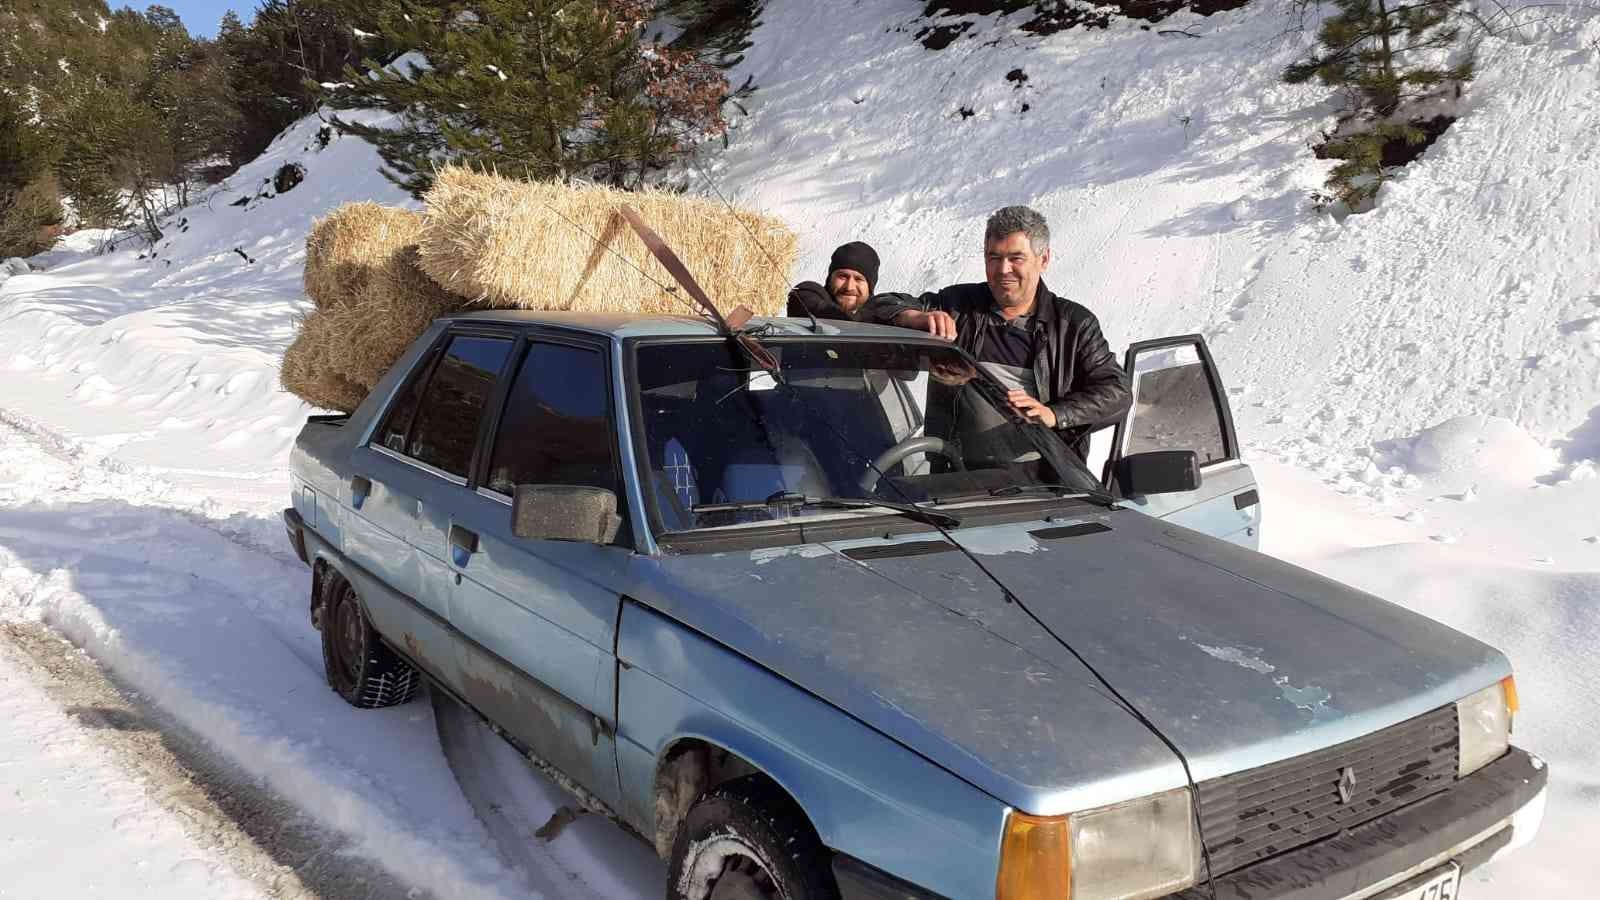 Karlı dağda yoluna çıkan yılkı atlarına otomobiliyle saman taşıdı #amasya